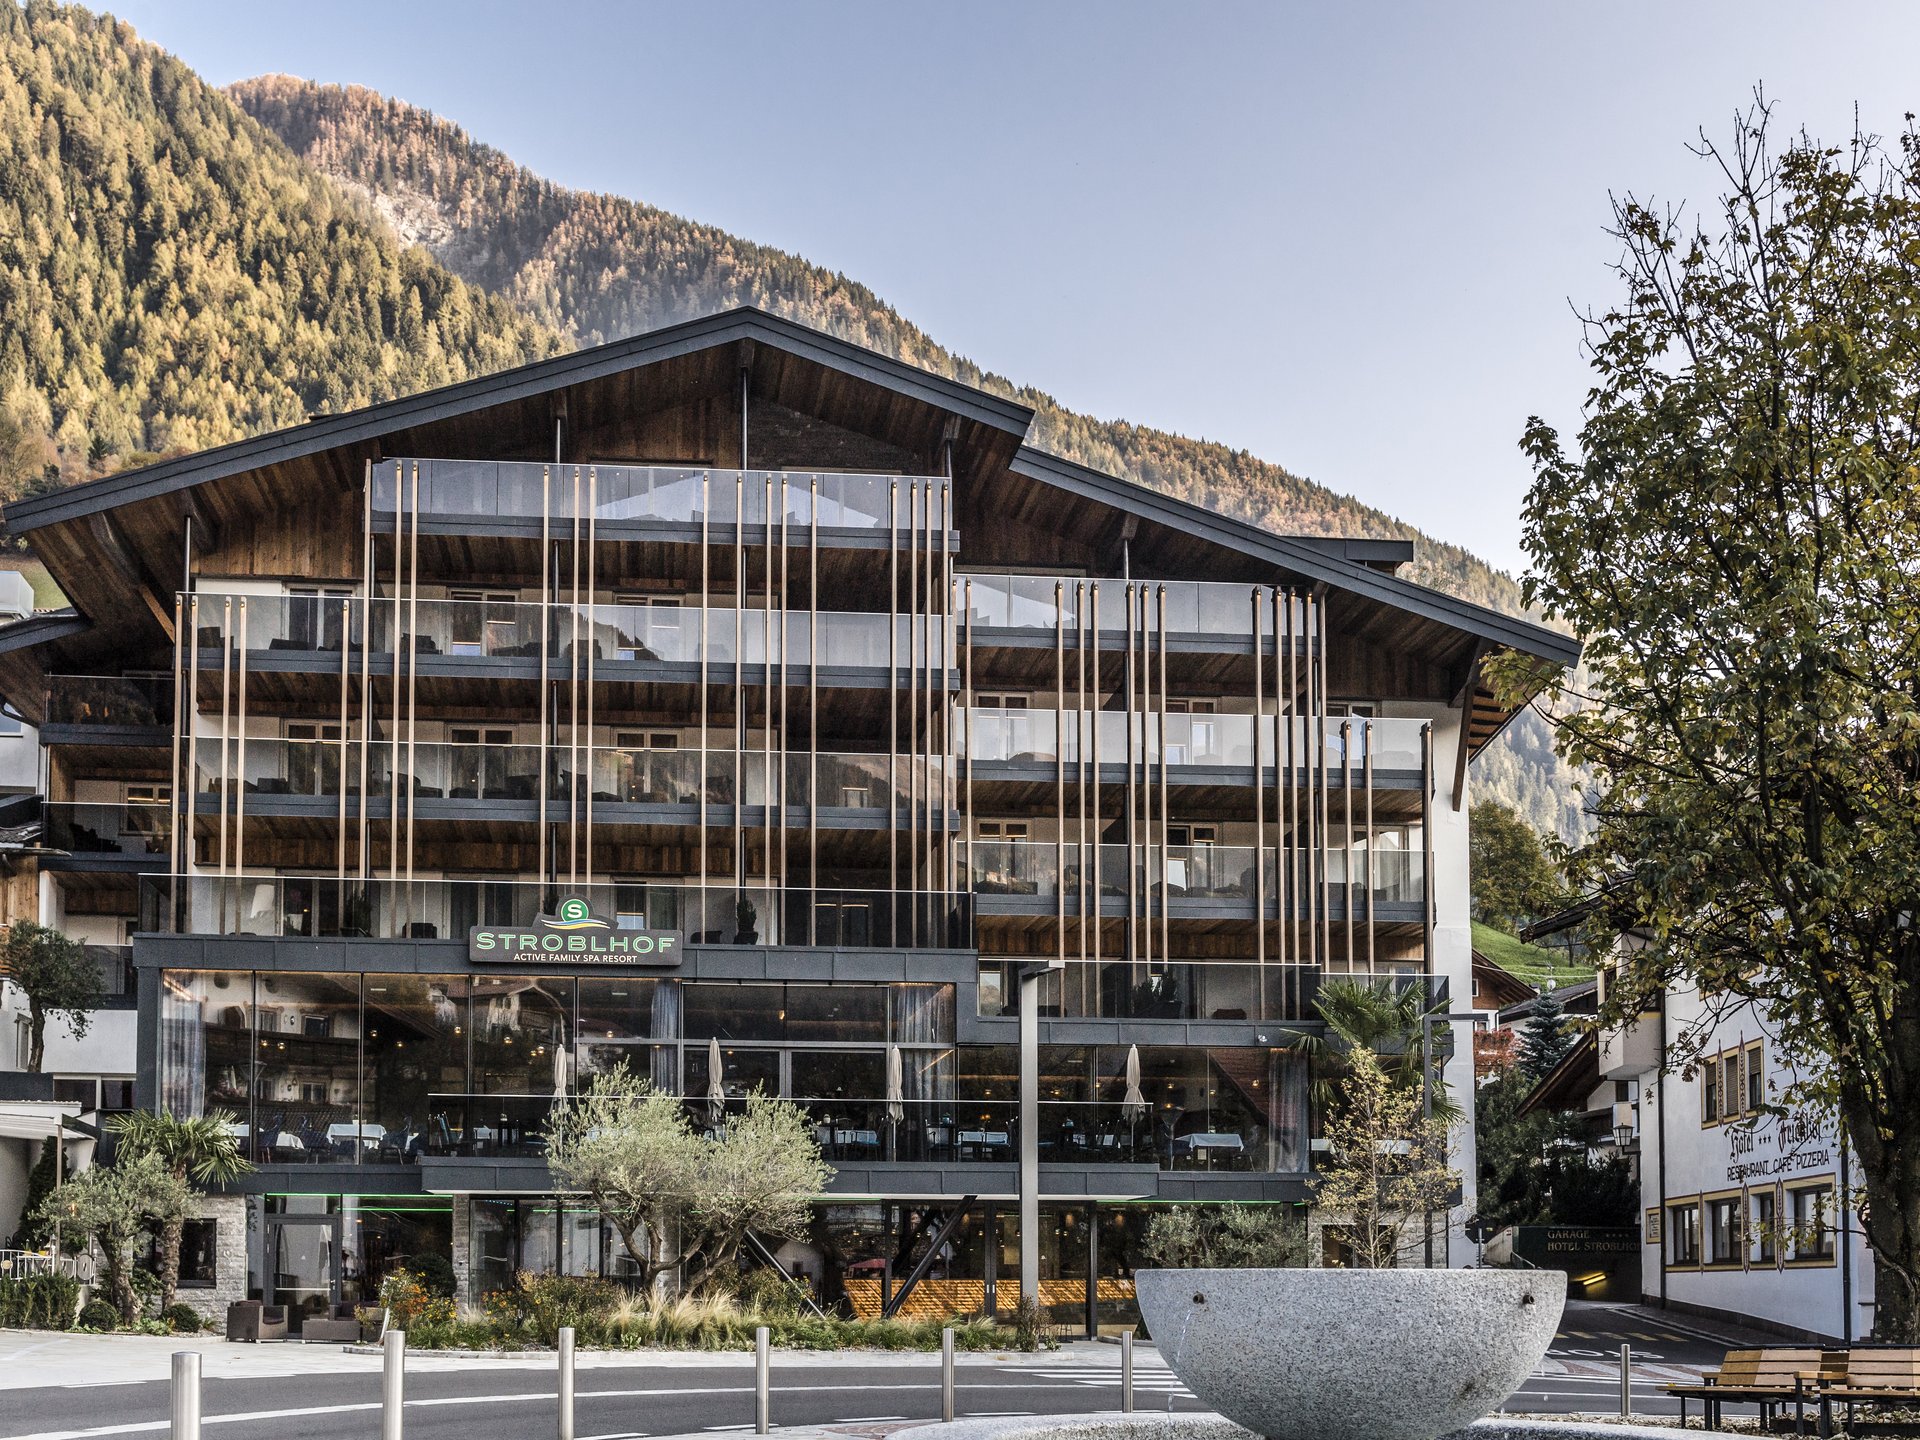 Ihr Hotel in St. Leonhard in Südtirol